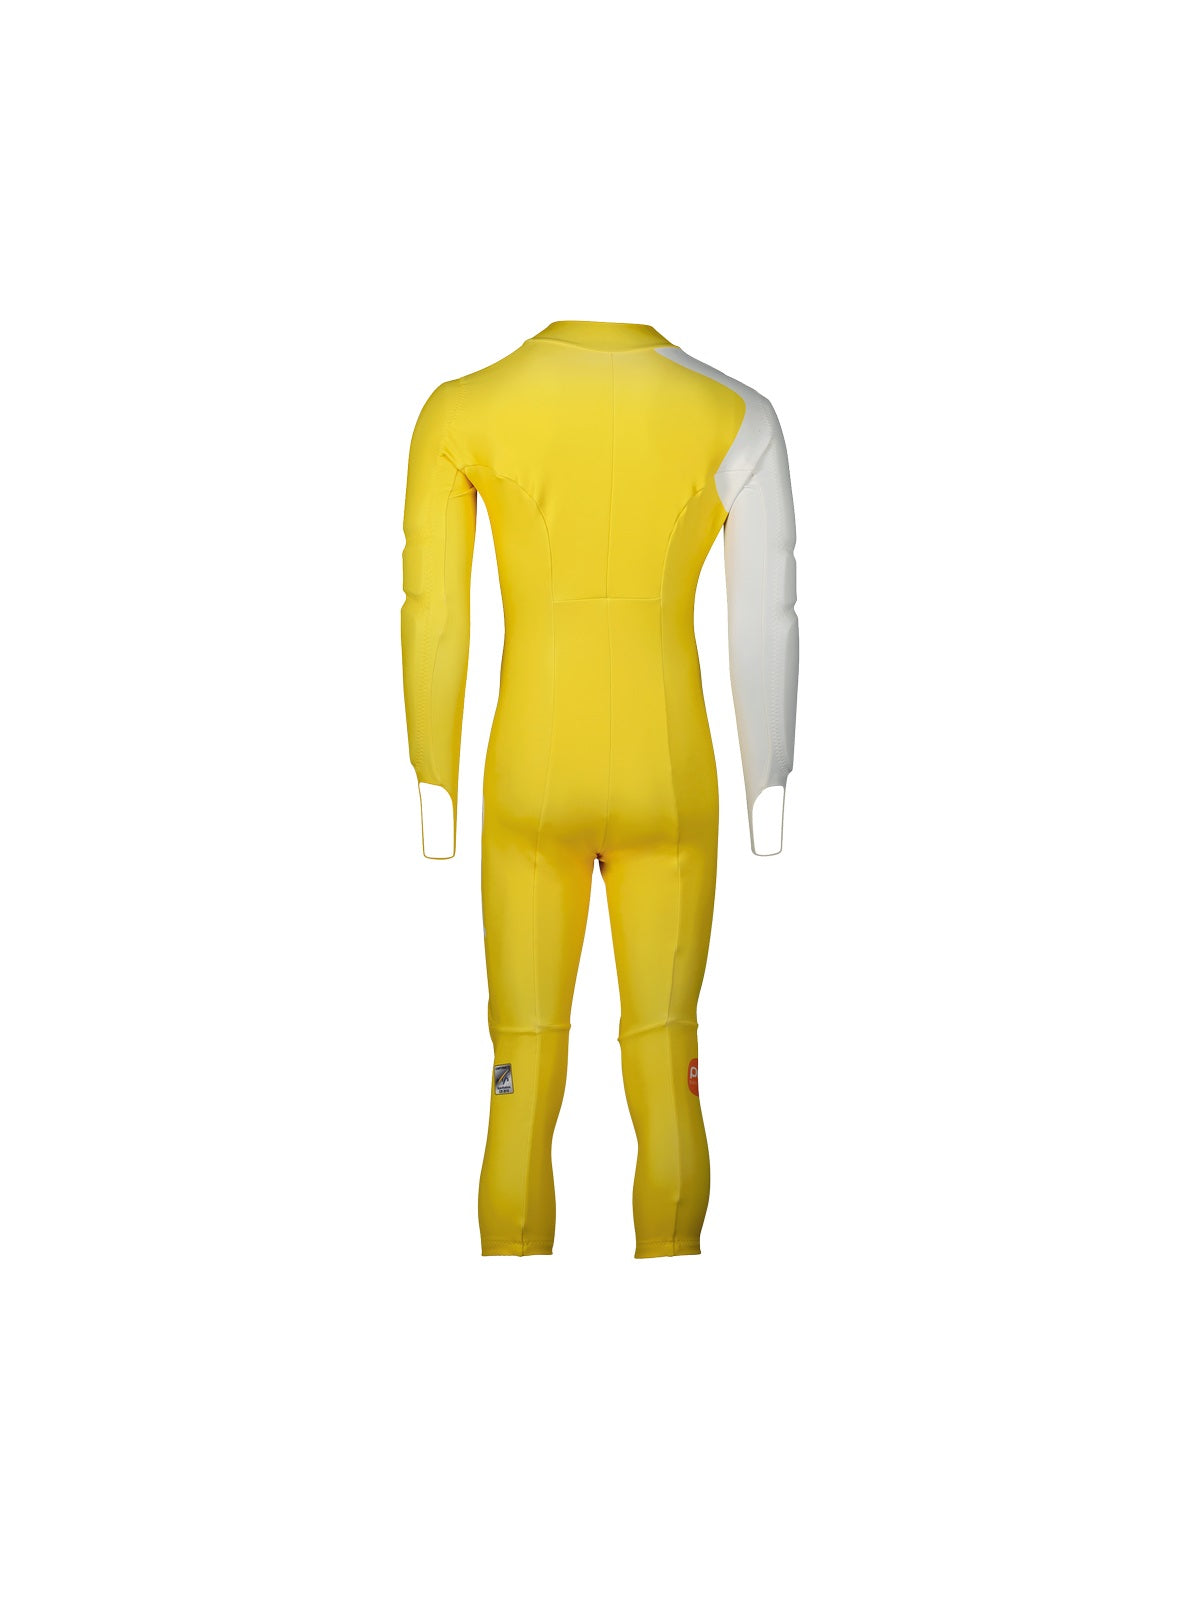 Guma narciarska POC Skin GS żółty